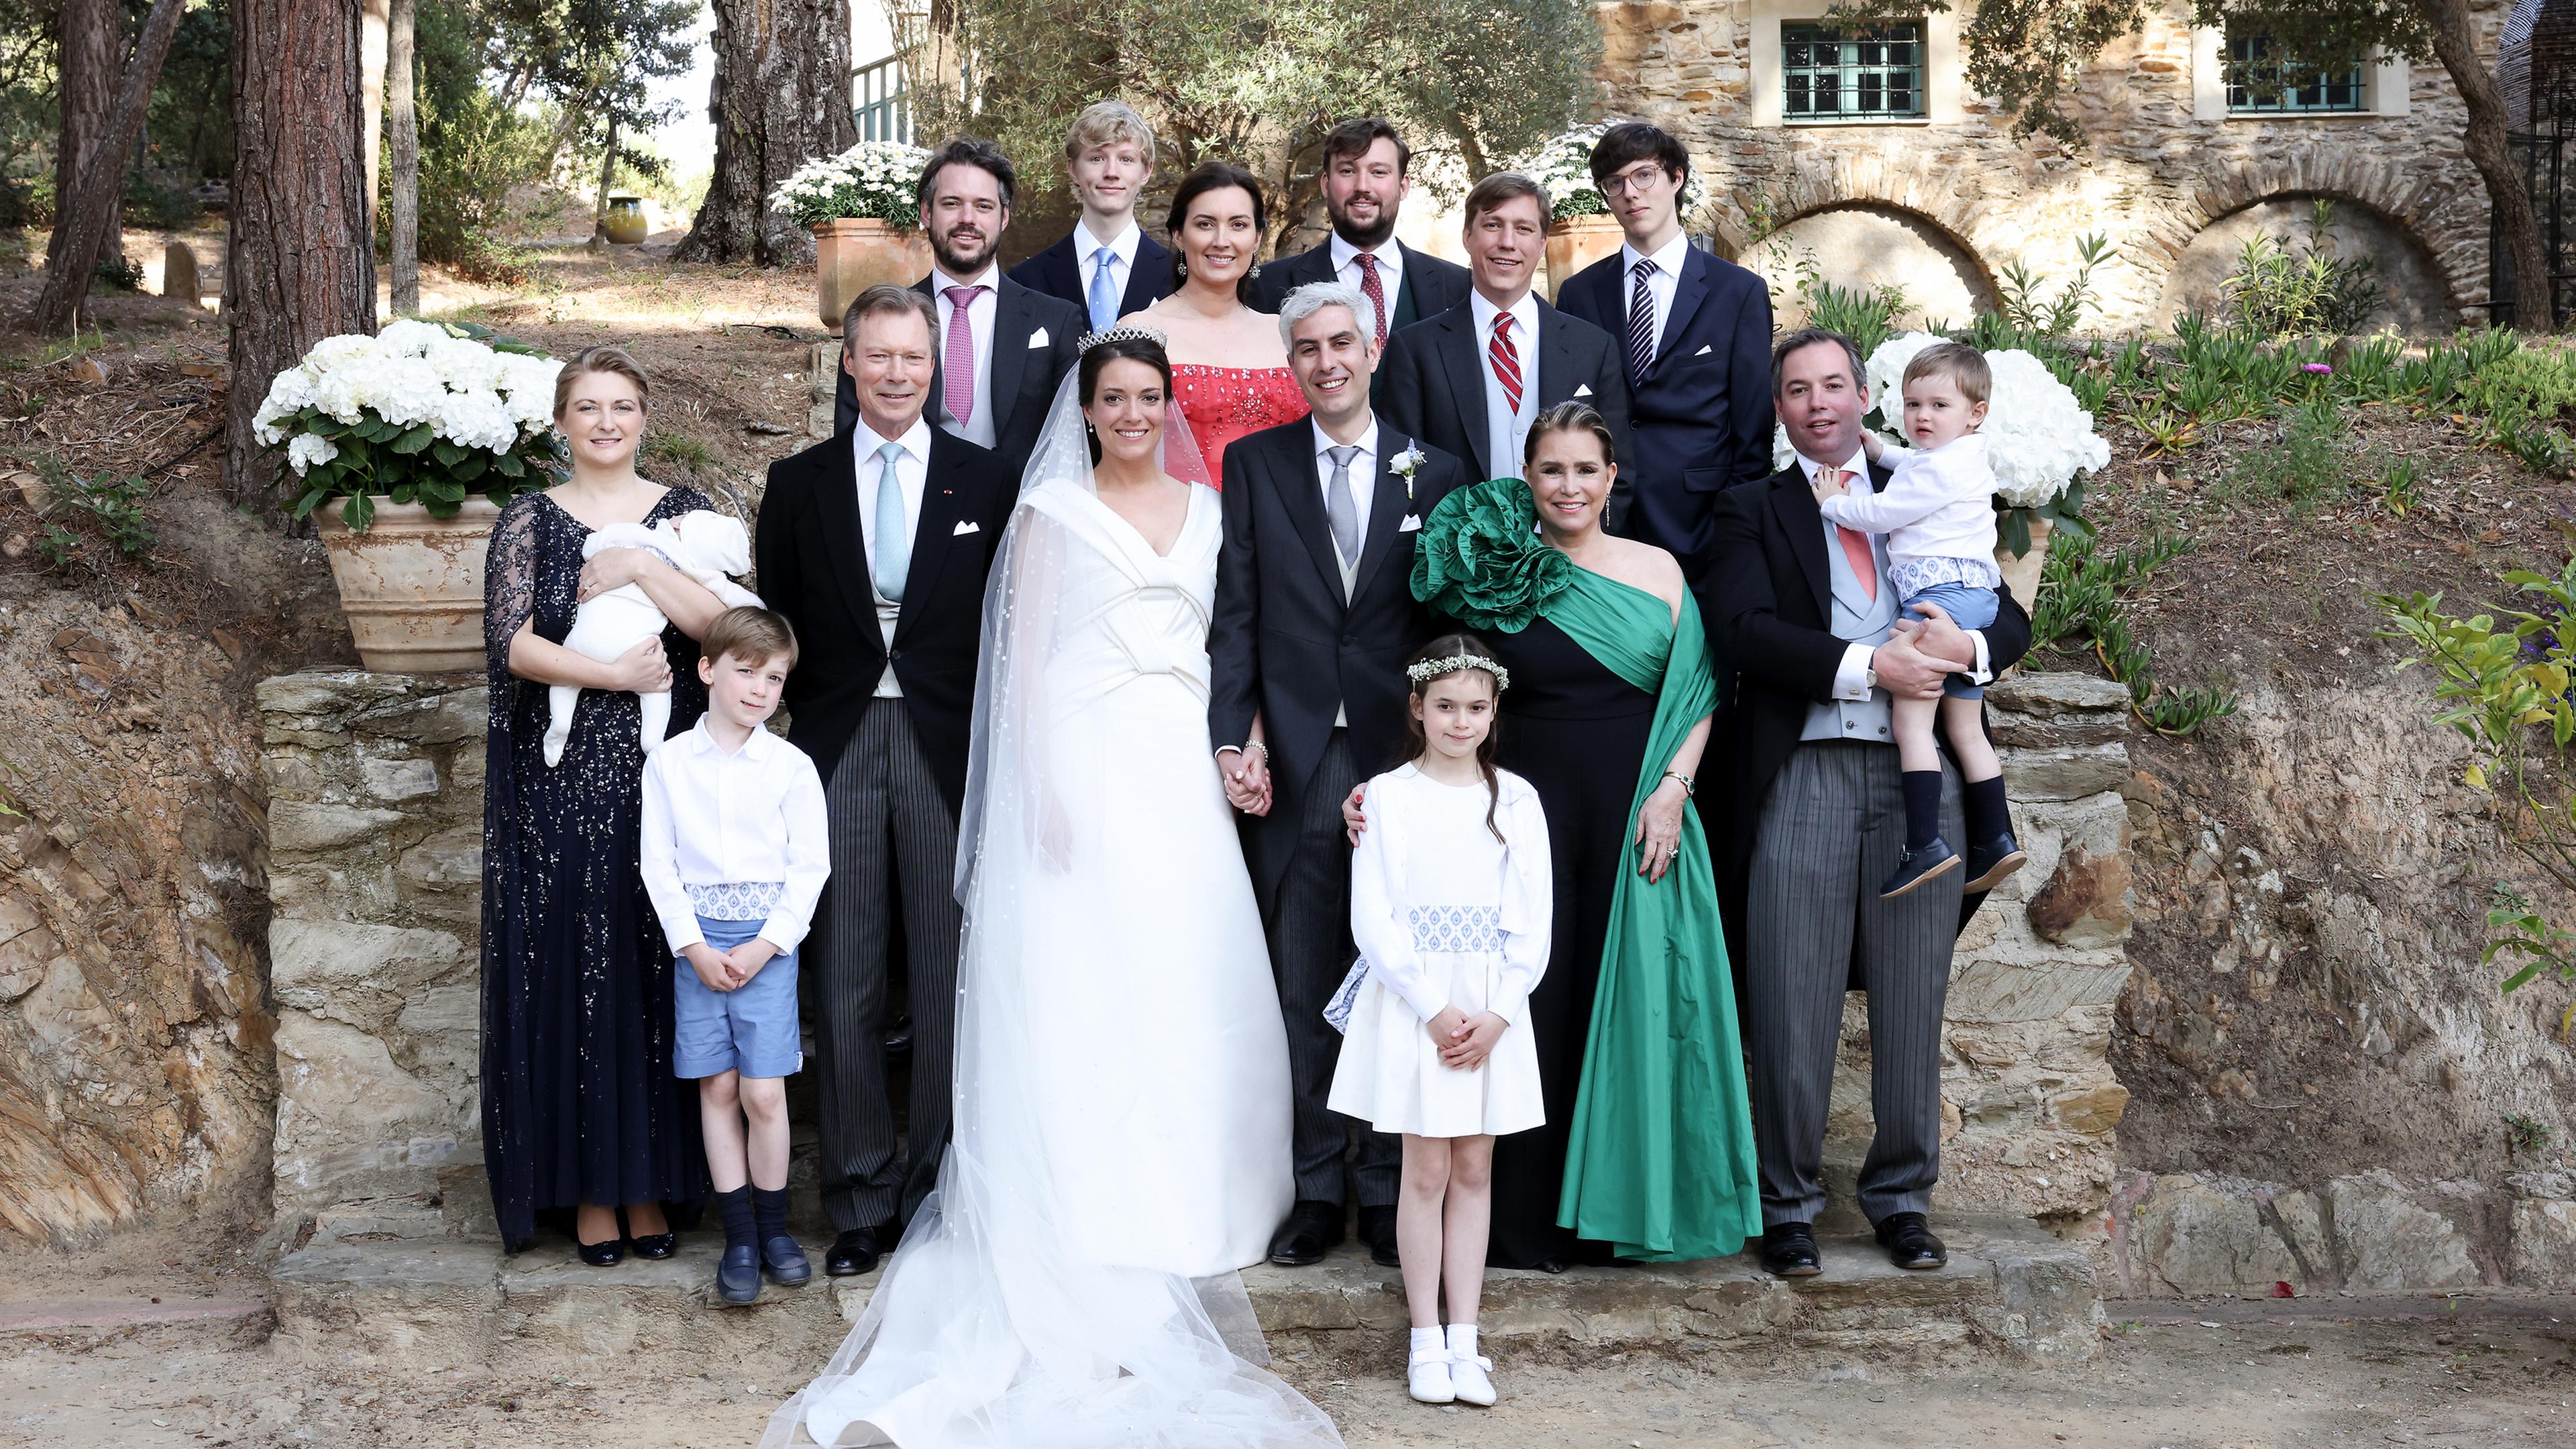 Familienfoto - mit den Eltern, Geschwistern samt Partnern und Neffen und Nichten der Braut.